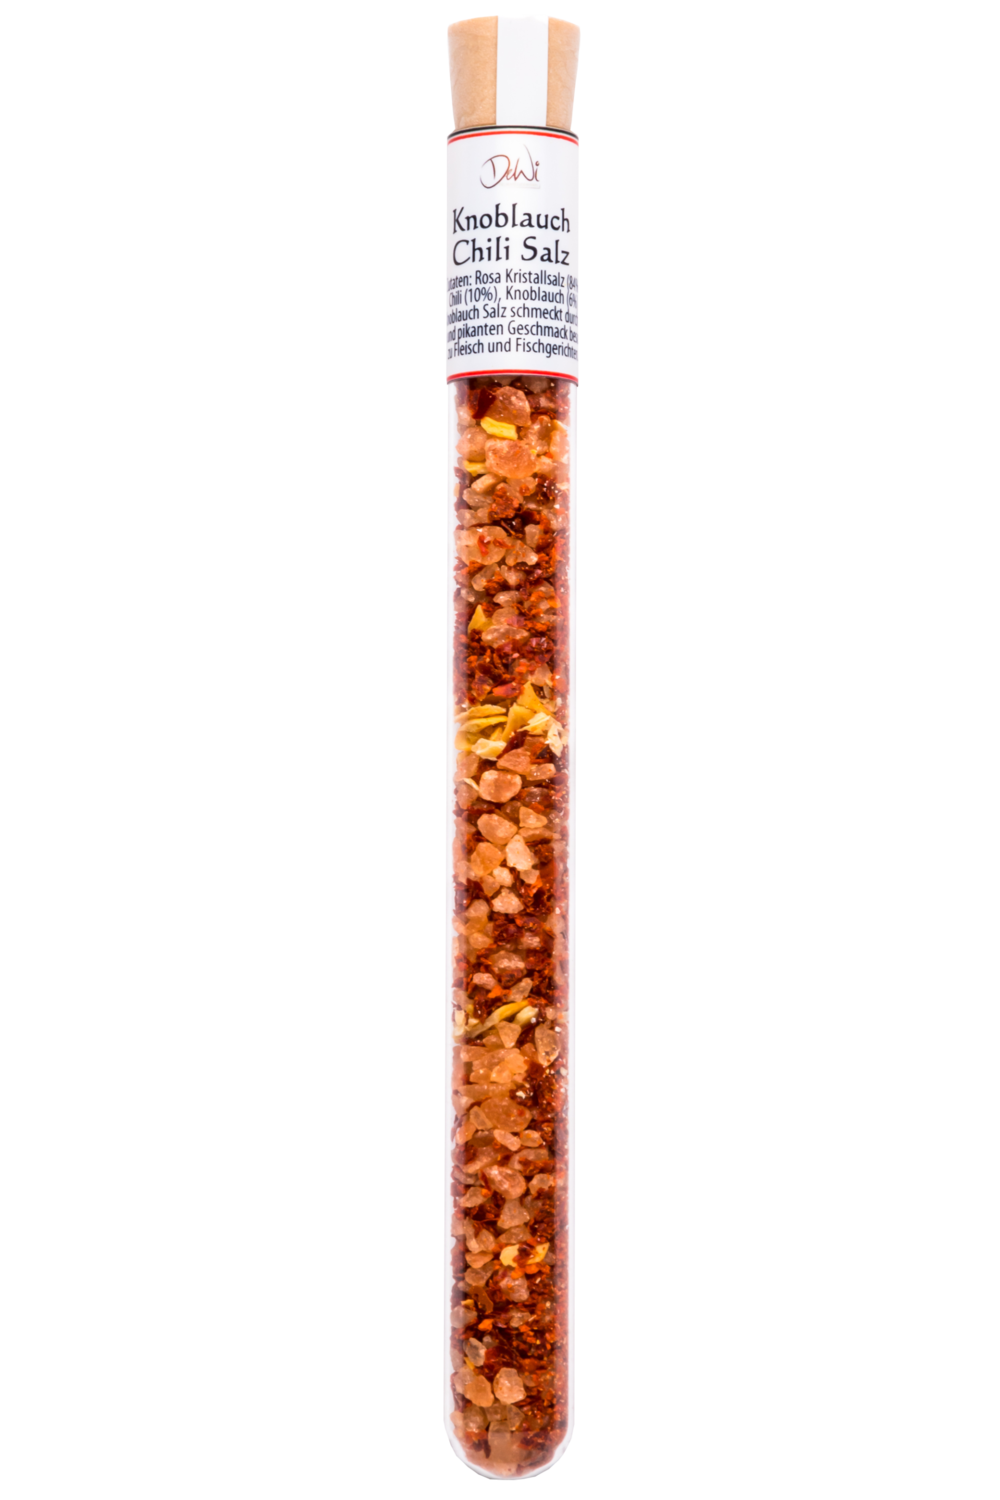 Knoblauch-Chili Salz im Reagenzglas - Inhalt 17 g (173,50 €/kg)